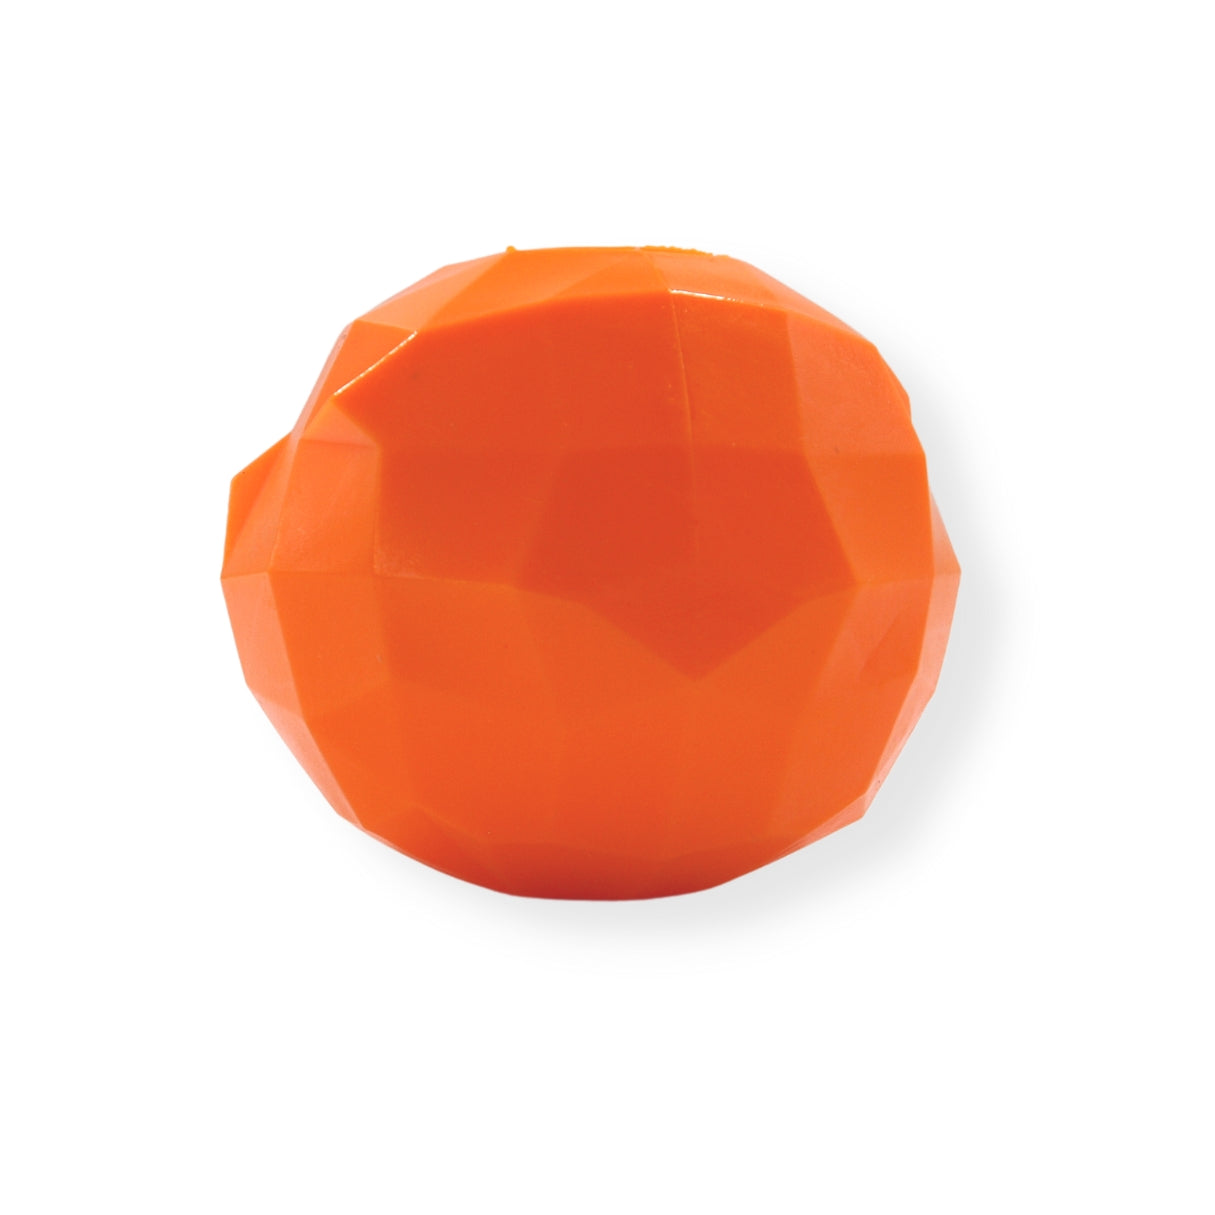 Juguete de goma para perro en forma de naranja